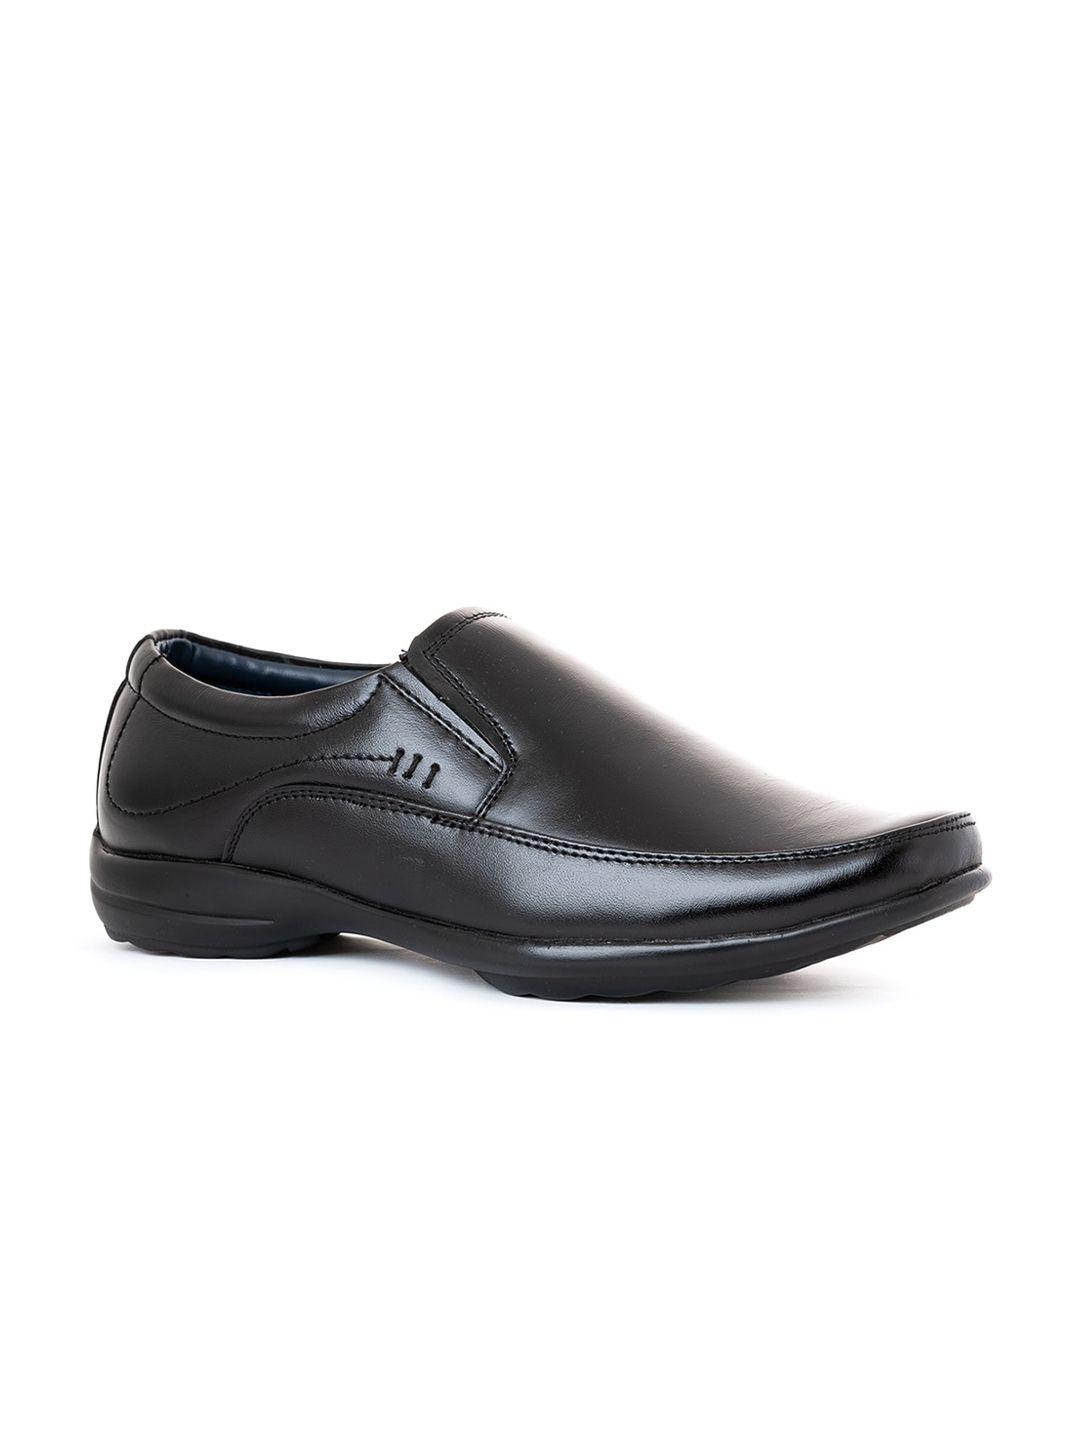 khadims-men-black-leather-slip-on-formal-loafers